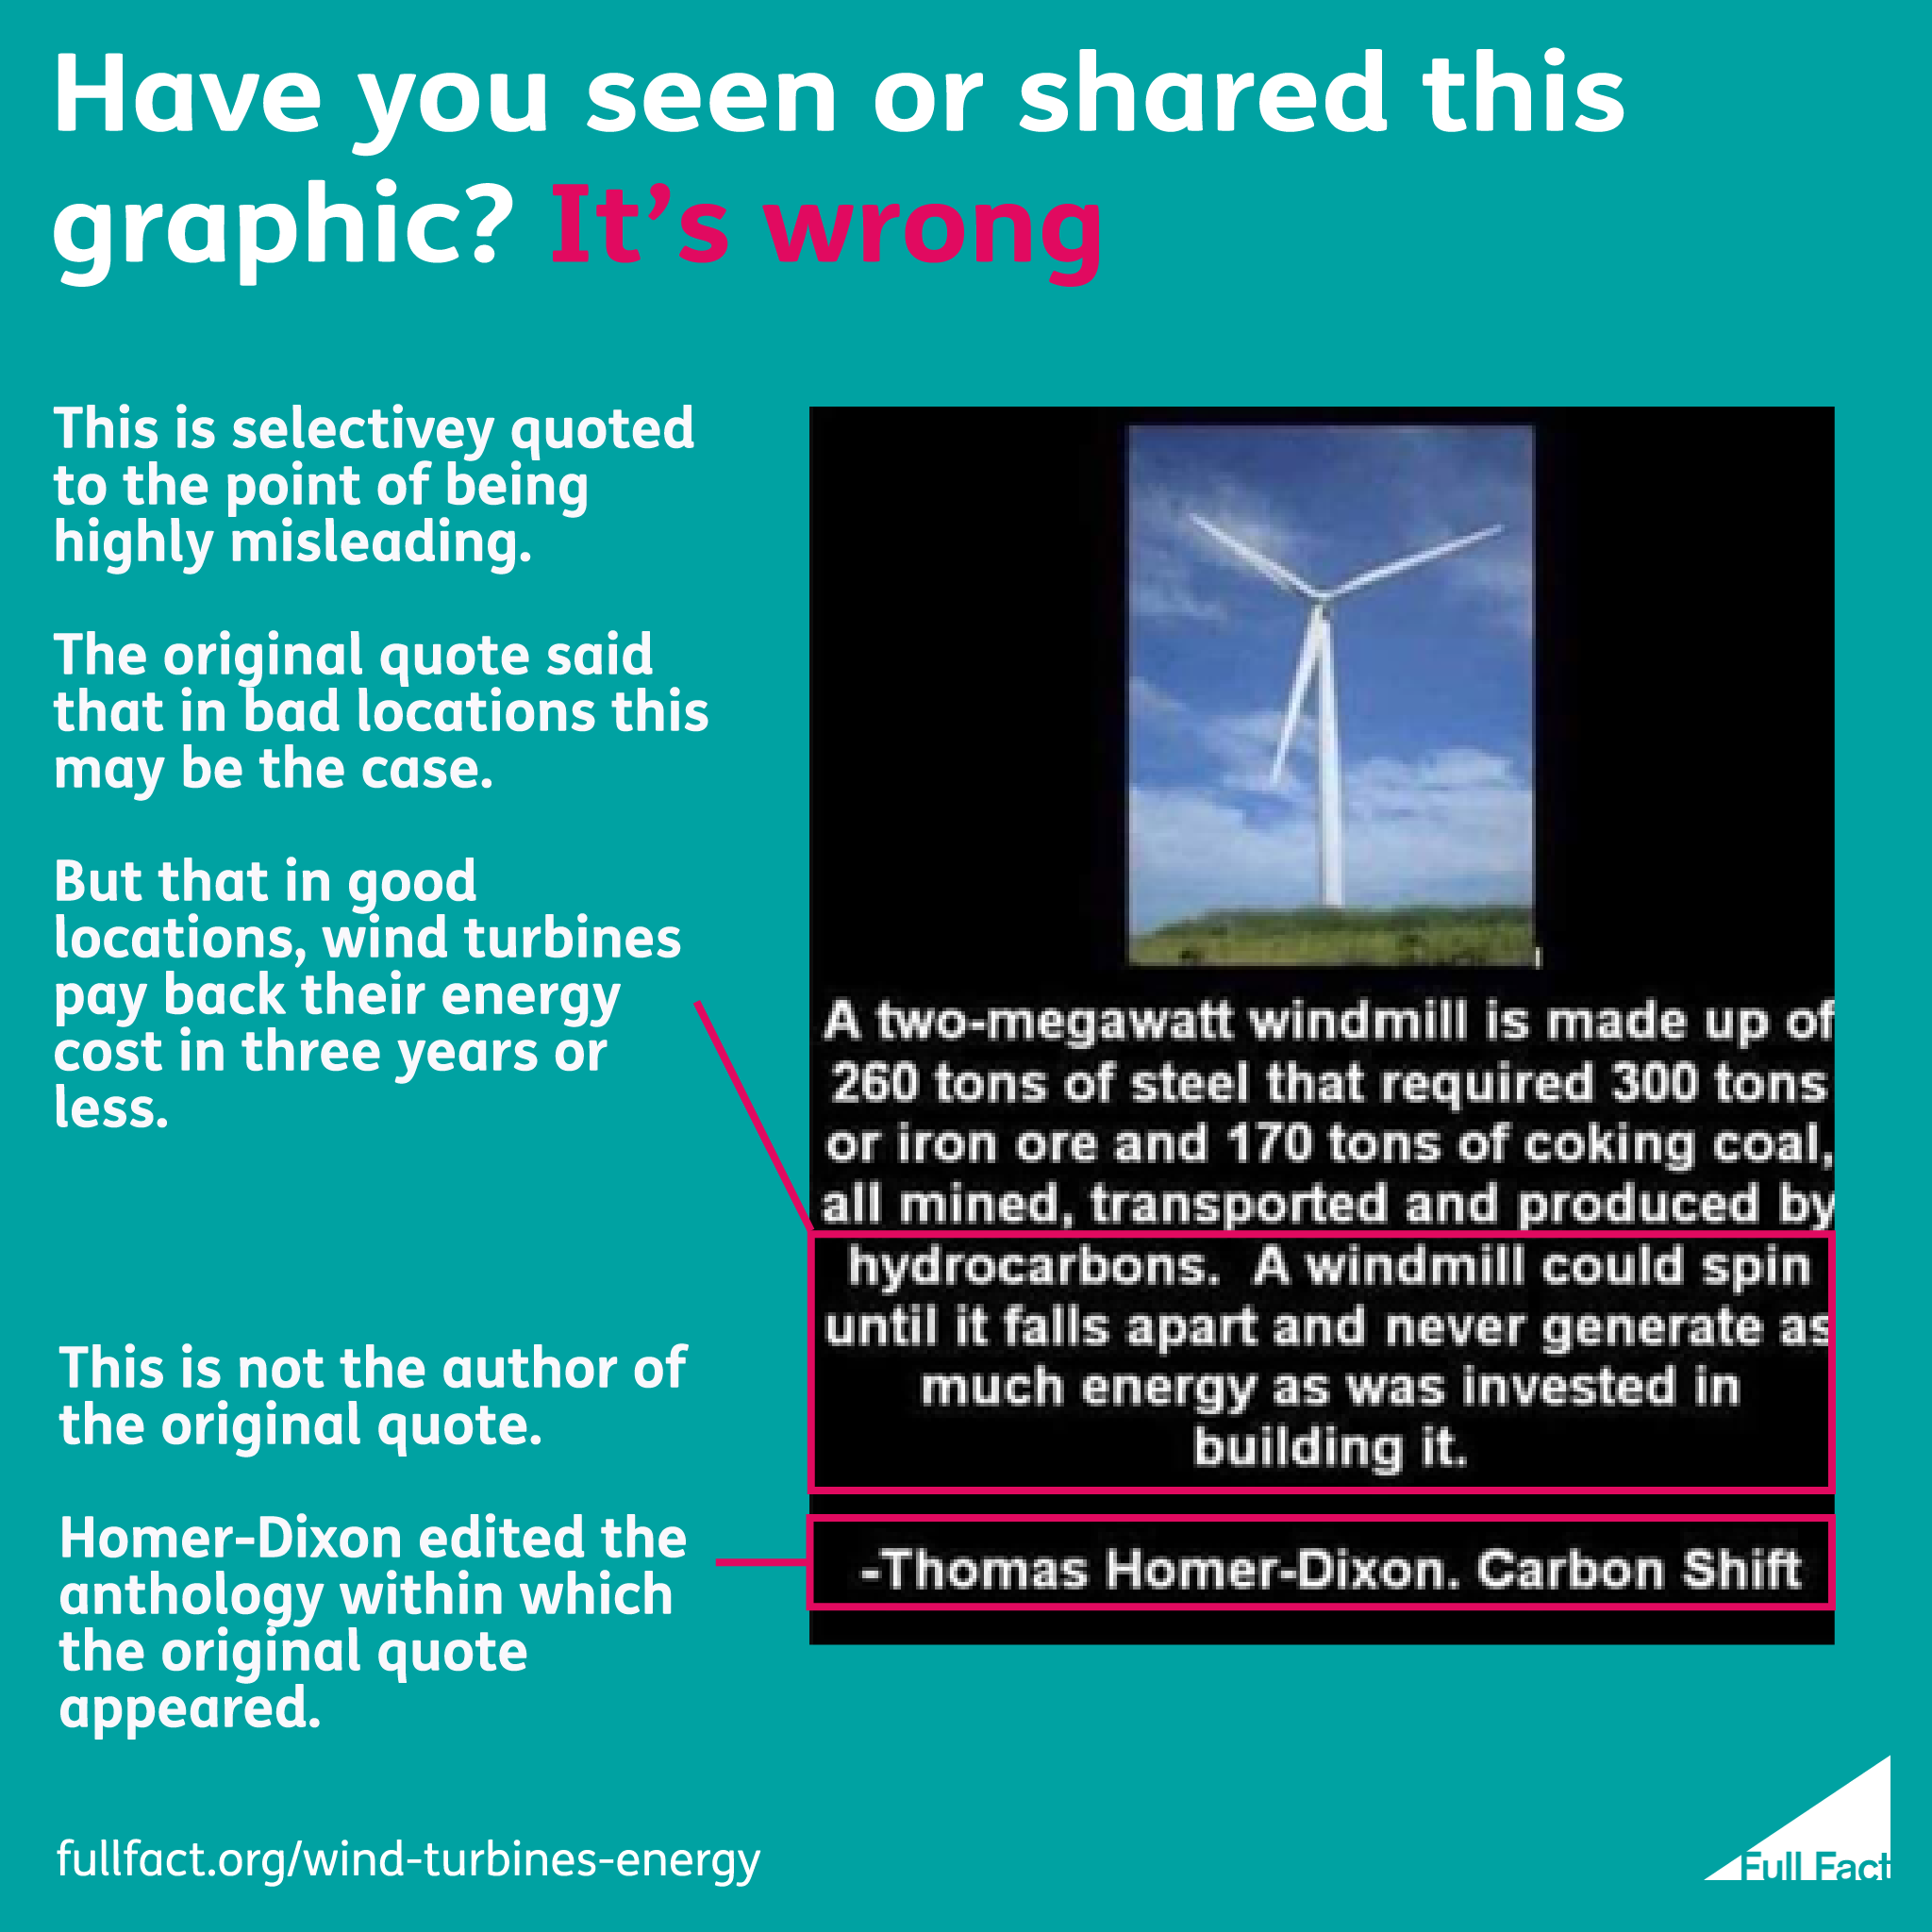 essay on wind turbine